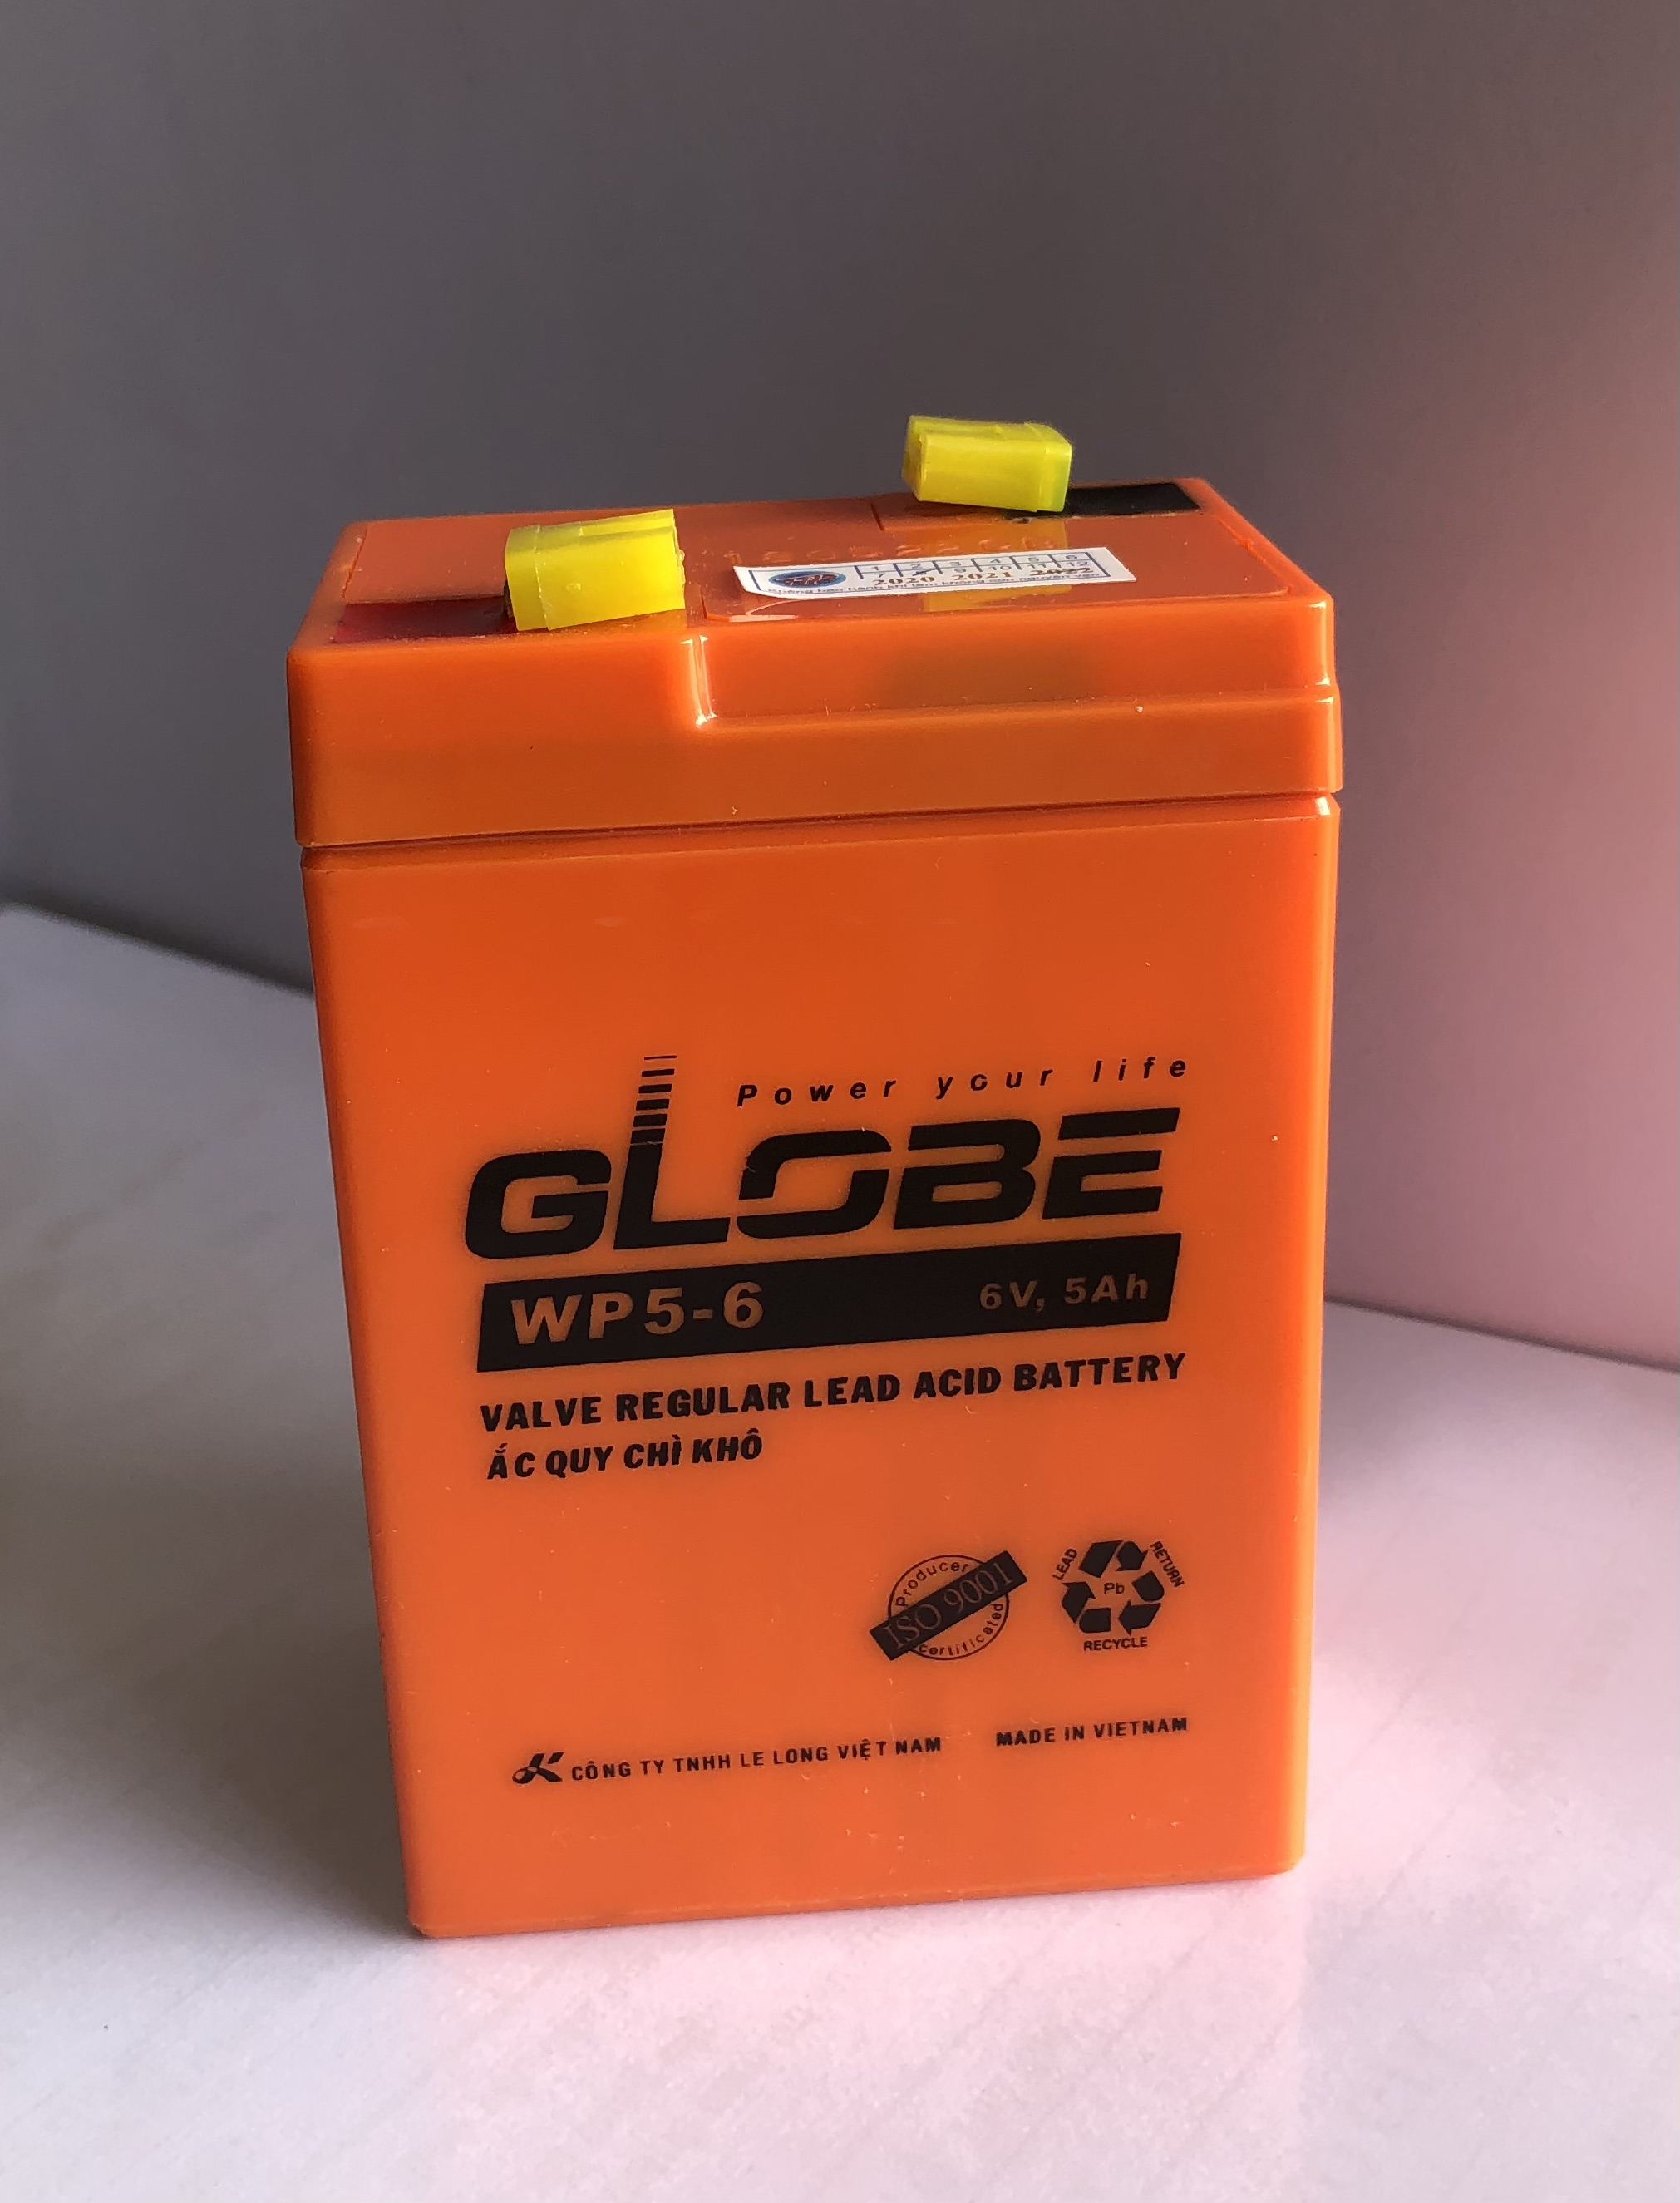 Ắc quy khô Globe WP5 - 6 6V - 5Ah dùng cho đèn sạc, quạt sạc, cân điện tử